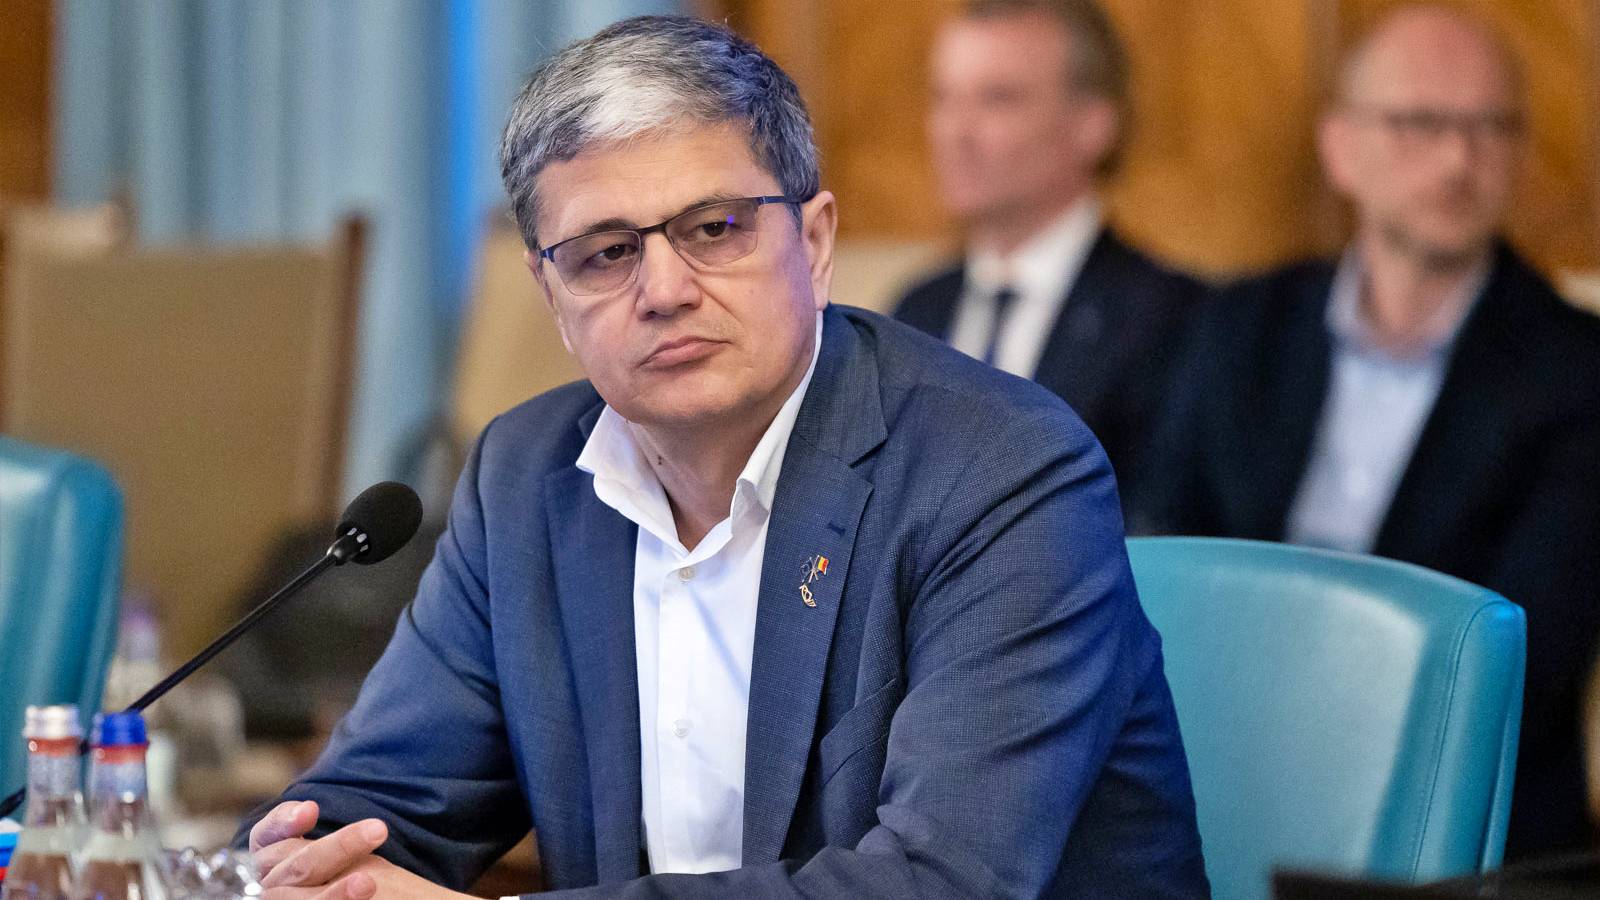 Marcel Bolos WICHTIGE Ankündigungsgelder der rumänischen Regierung, Monat Mai